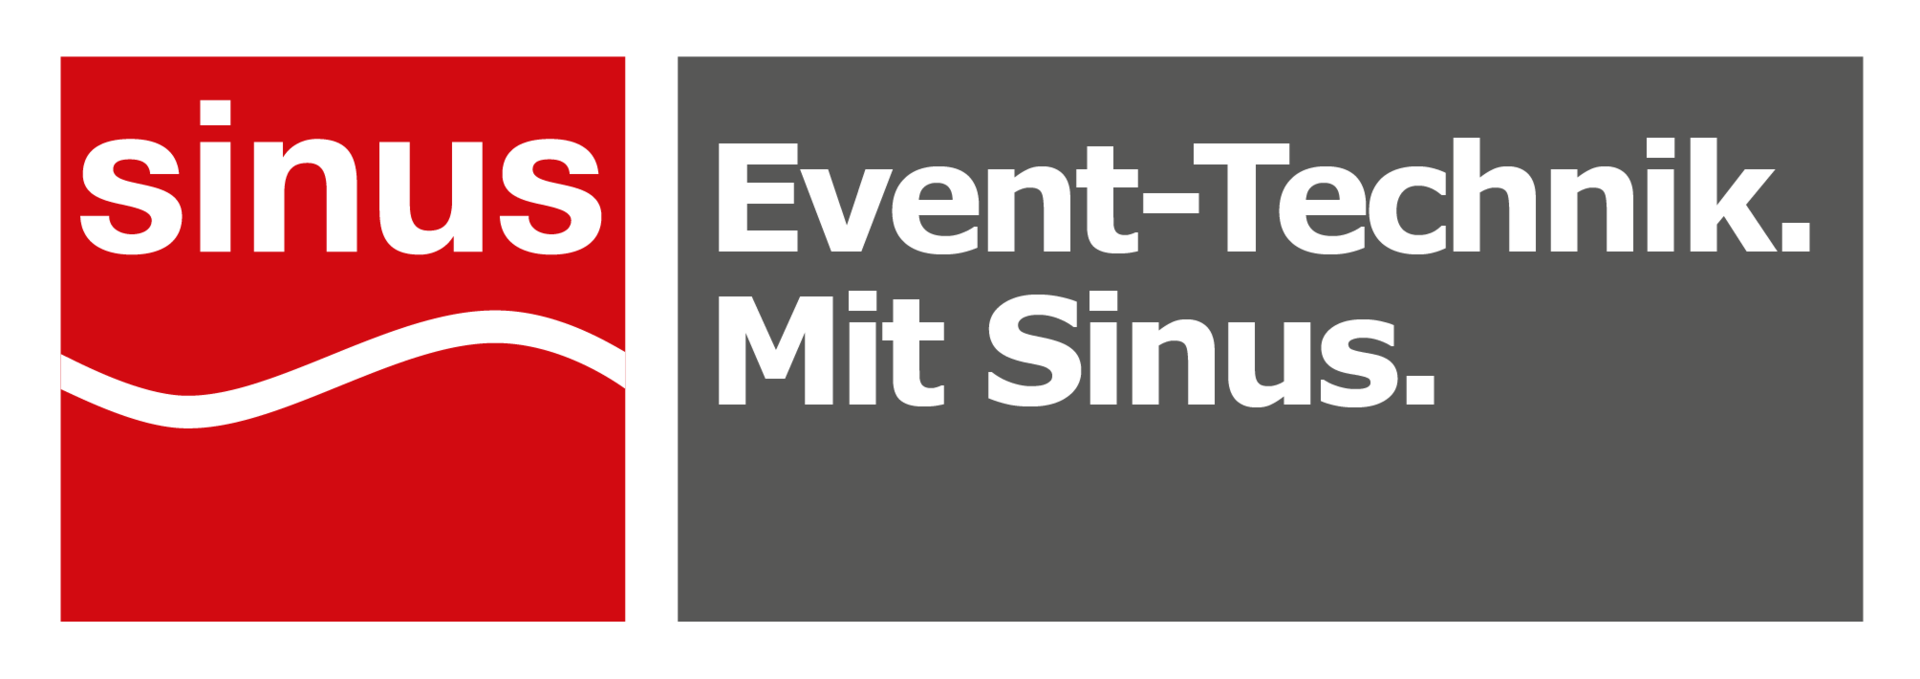 Abbildung: Logo von Sinus Event-Technik GmbH